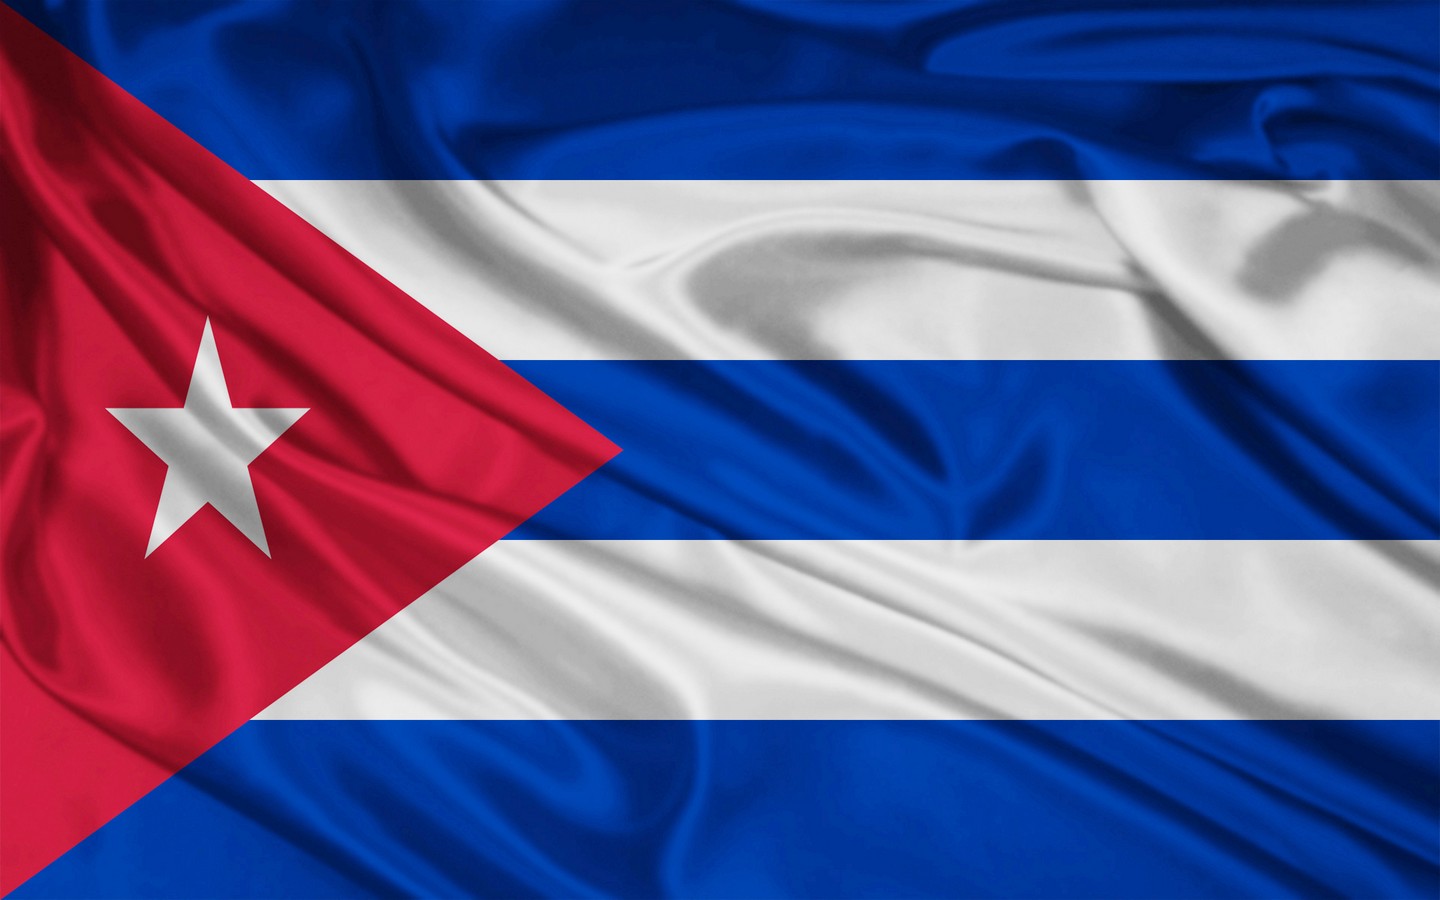 
كوبا: اعتقال 90 معارضاً كانوا يضعون اقنعة تمثل وجه الرئيس الامريكي